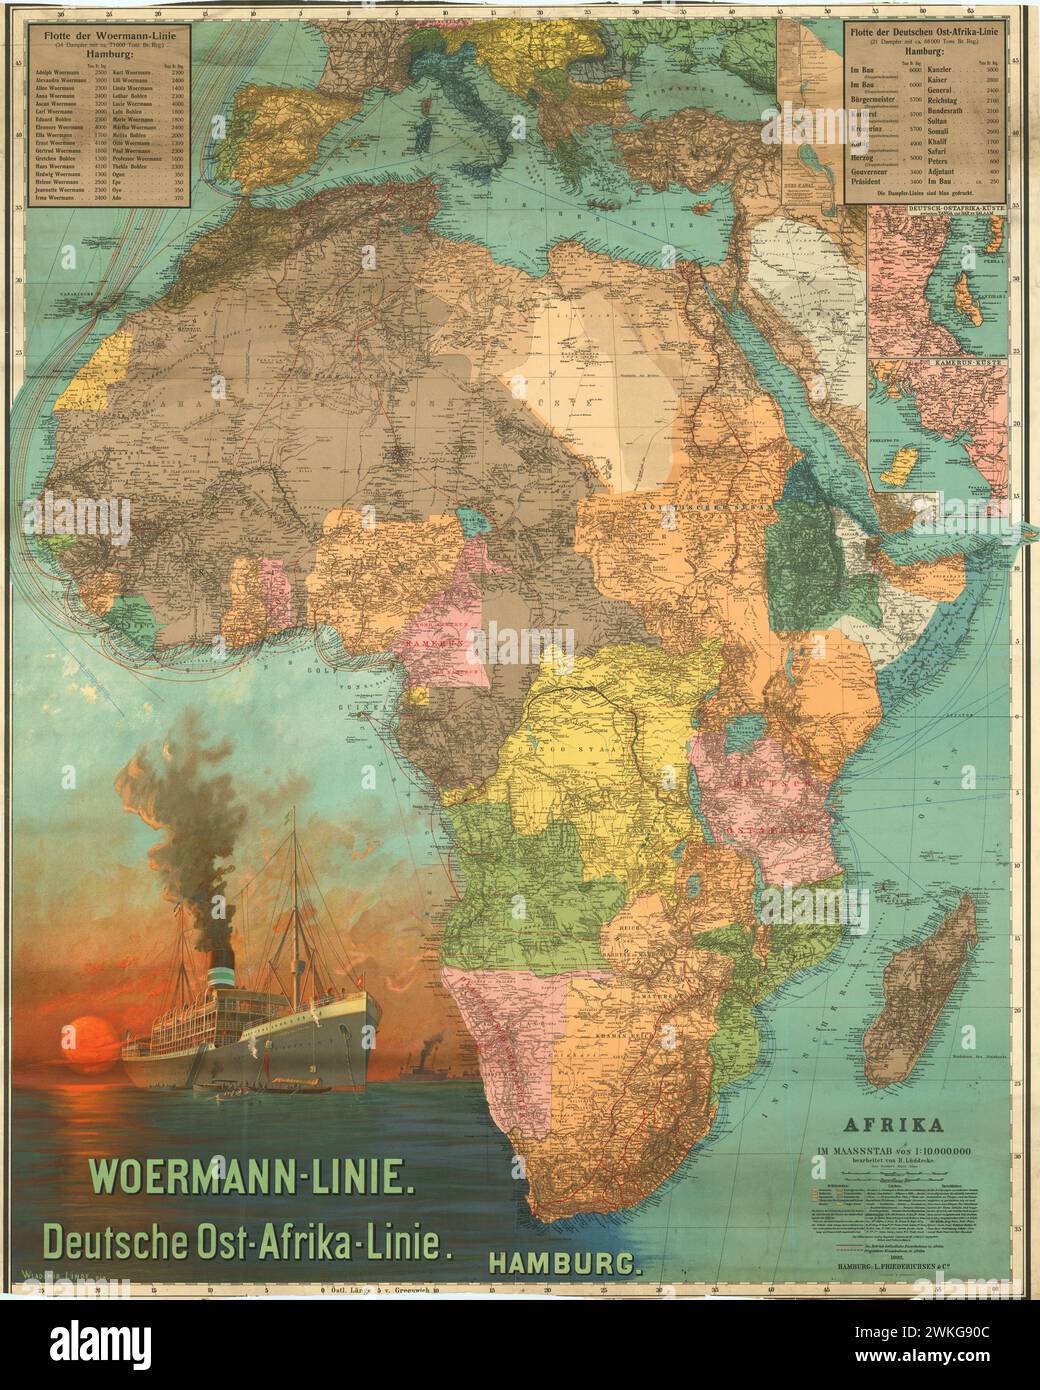 Mappa poster vintage, Woermann-Linie. Linea Deutsche Ost-Afrika. 1902. Poster cartografico dell'Africa che mostra il layout politico subito dopo la guerra boera Foto Stock